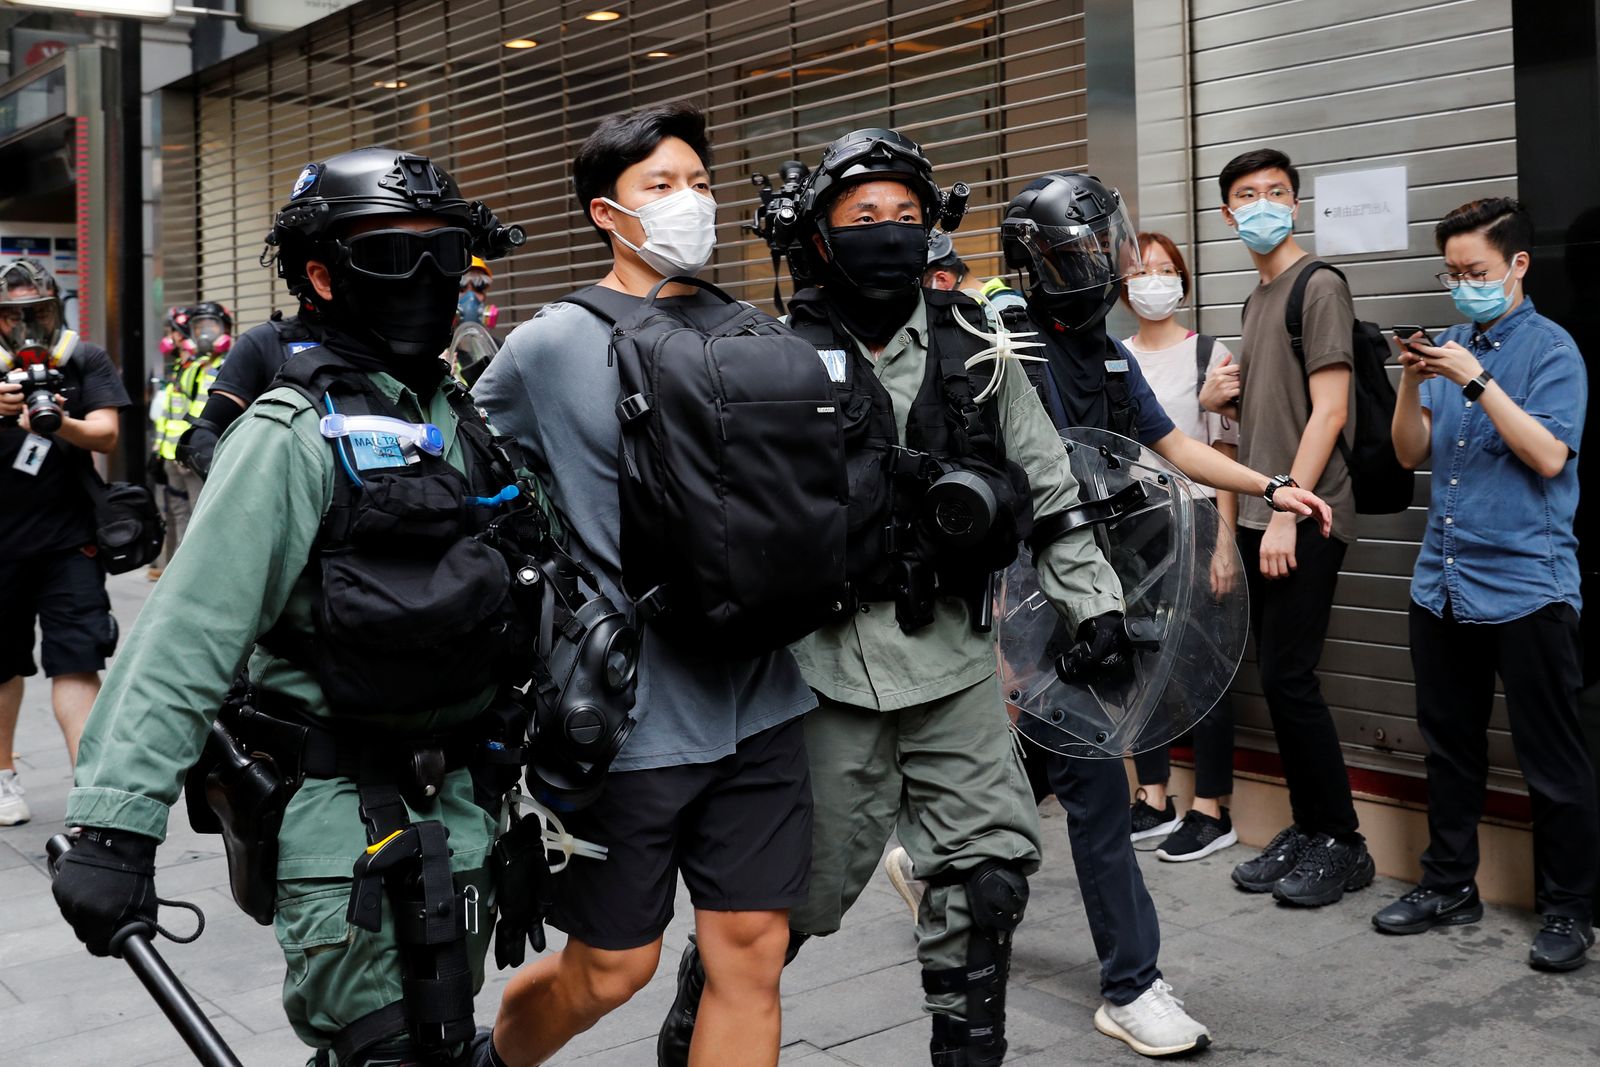 ضباط شرطة يحتجزون متظاهراً شارك في إحدى الاحتجاجات في هونغ كونغ - REUTERS